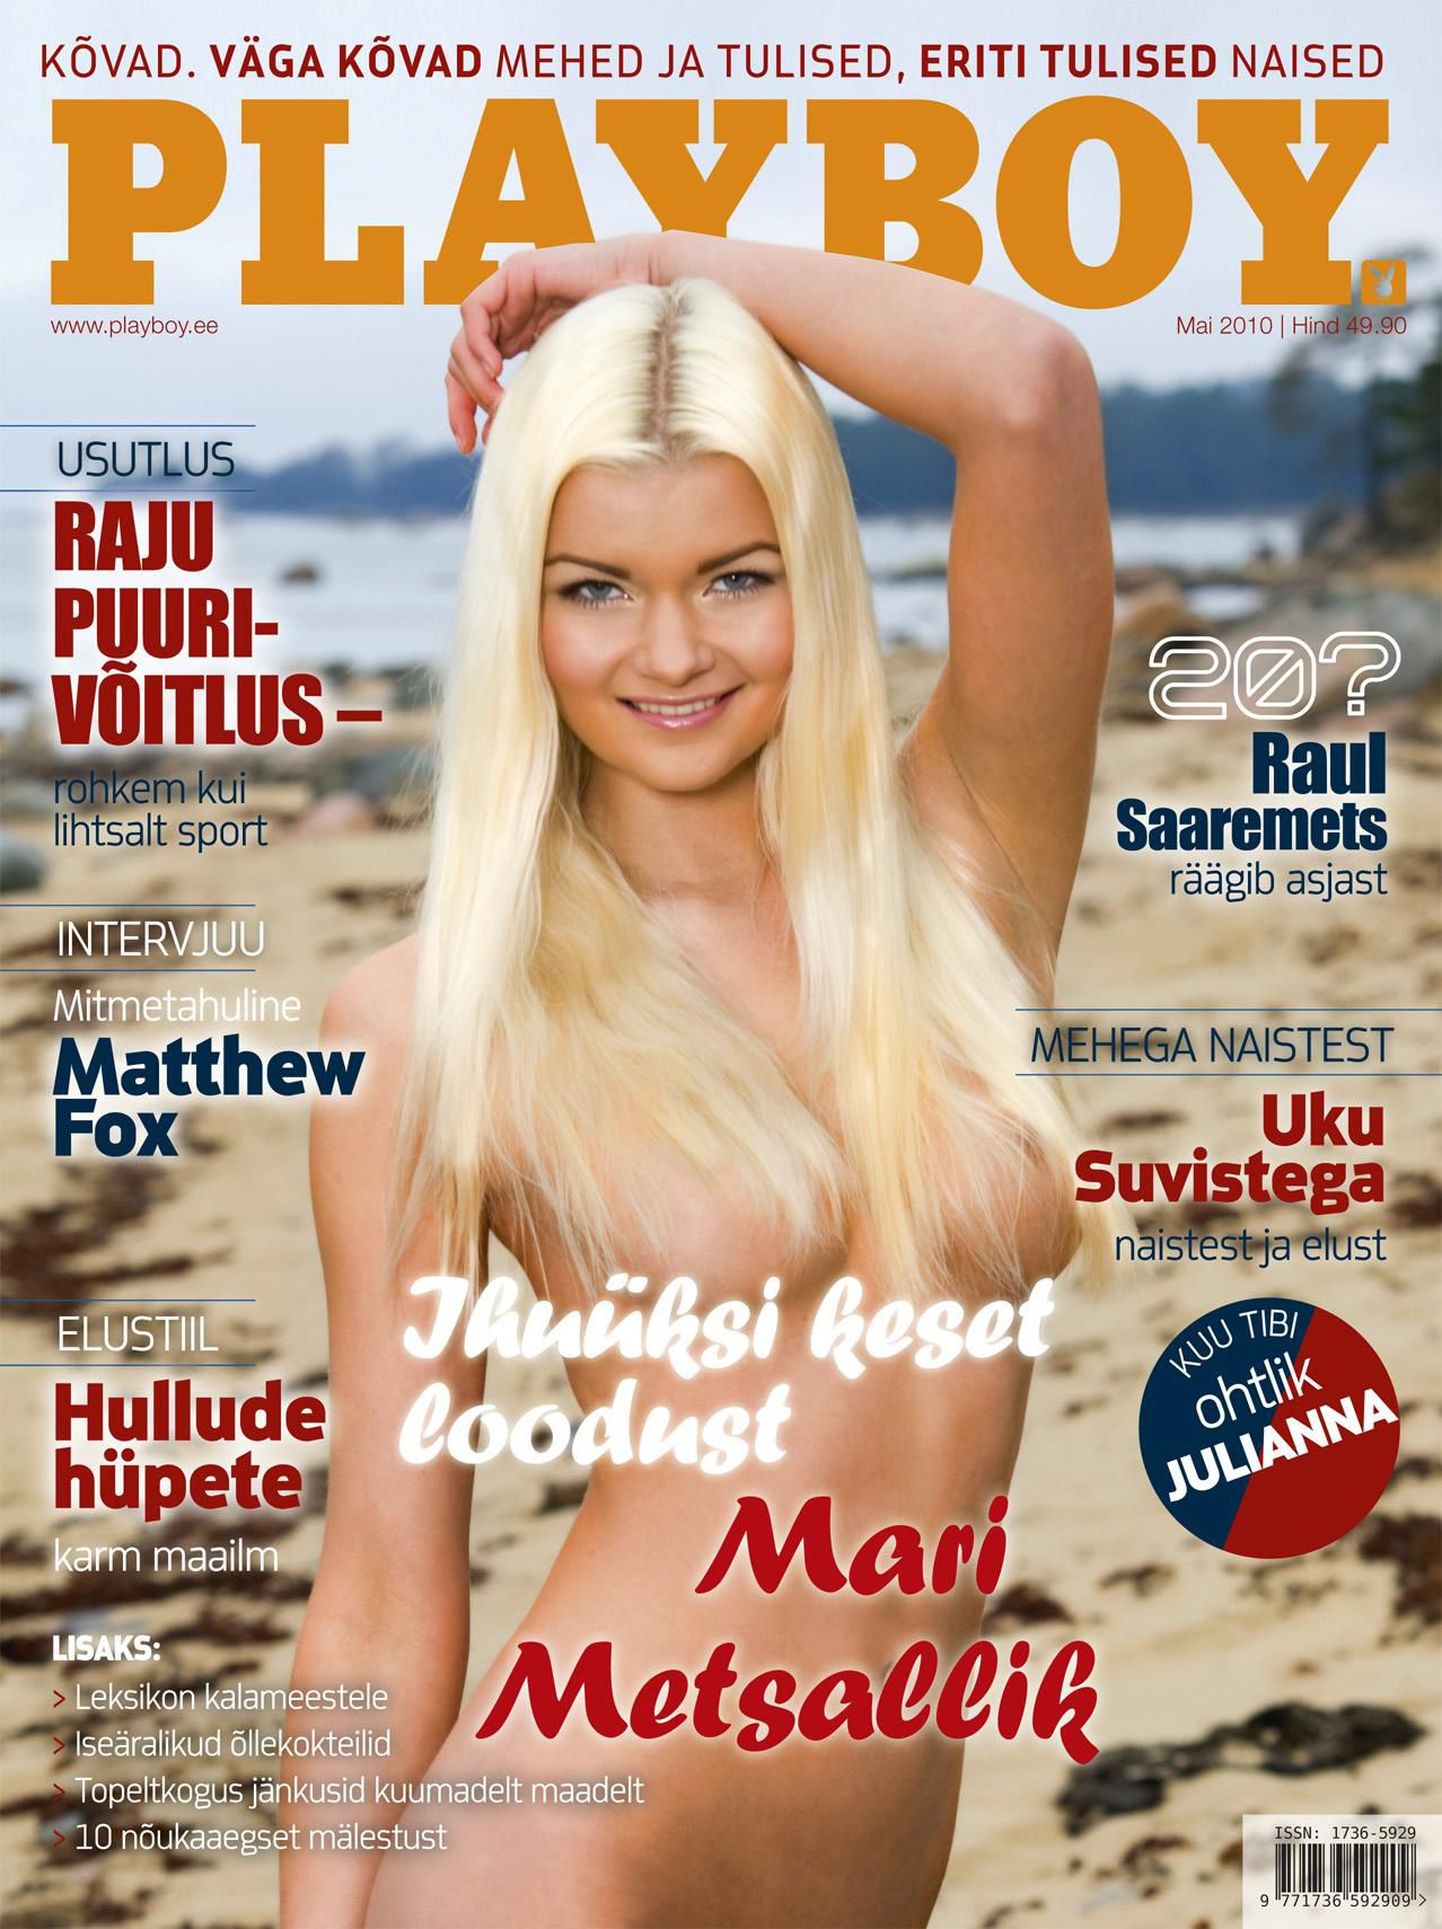 Maikuu Playboy esikaant kaunistab Mari Metsallik - näkk keset loodust